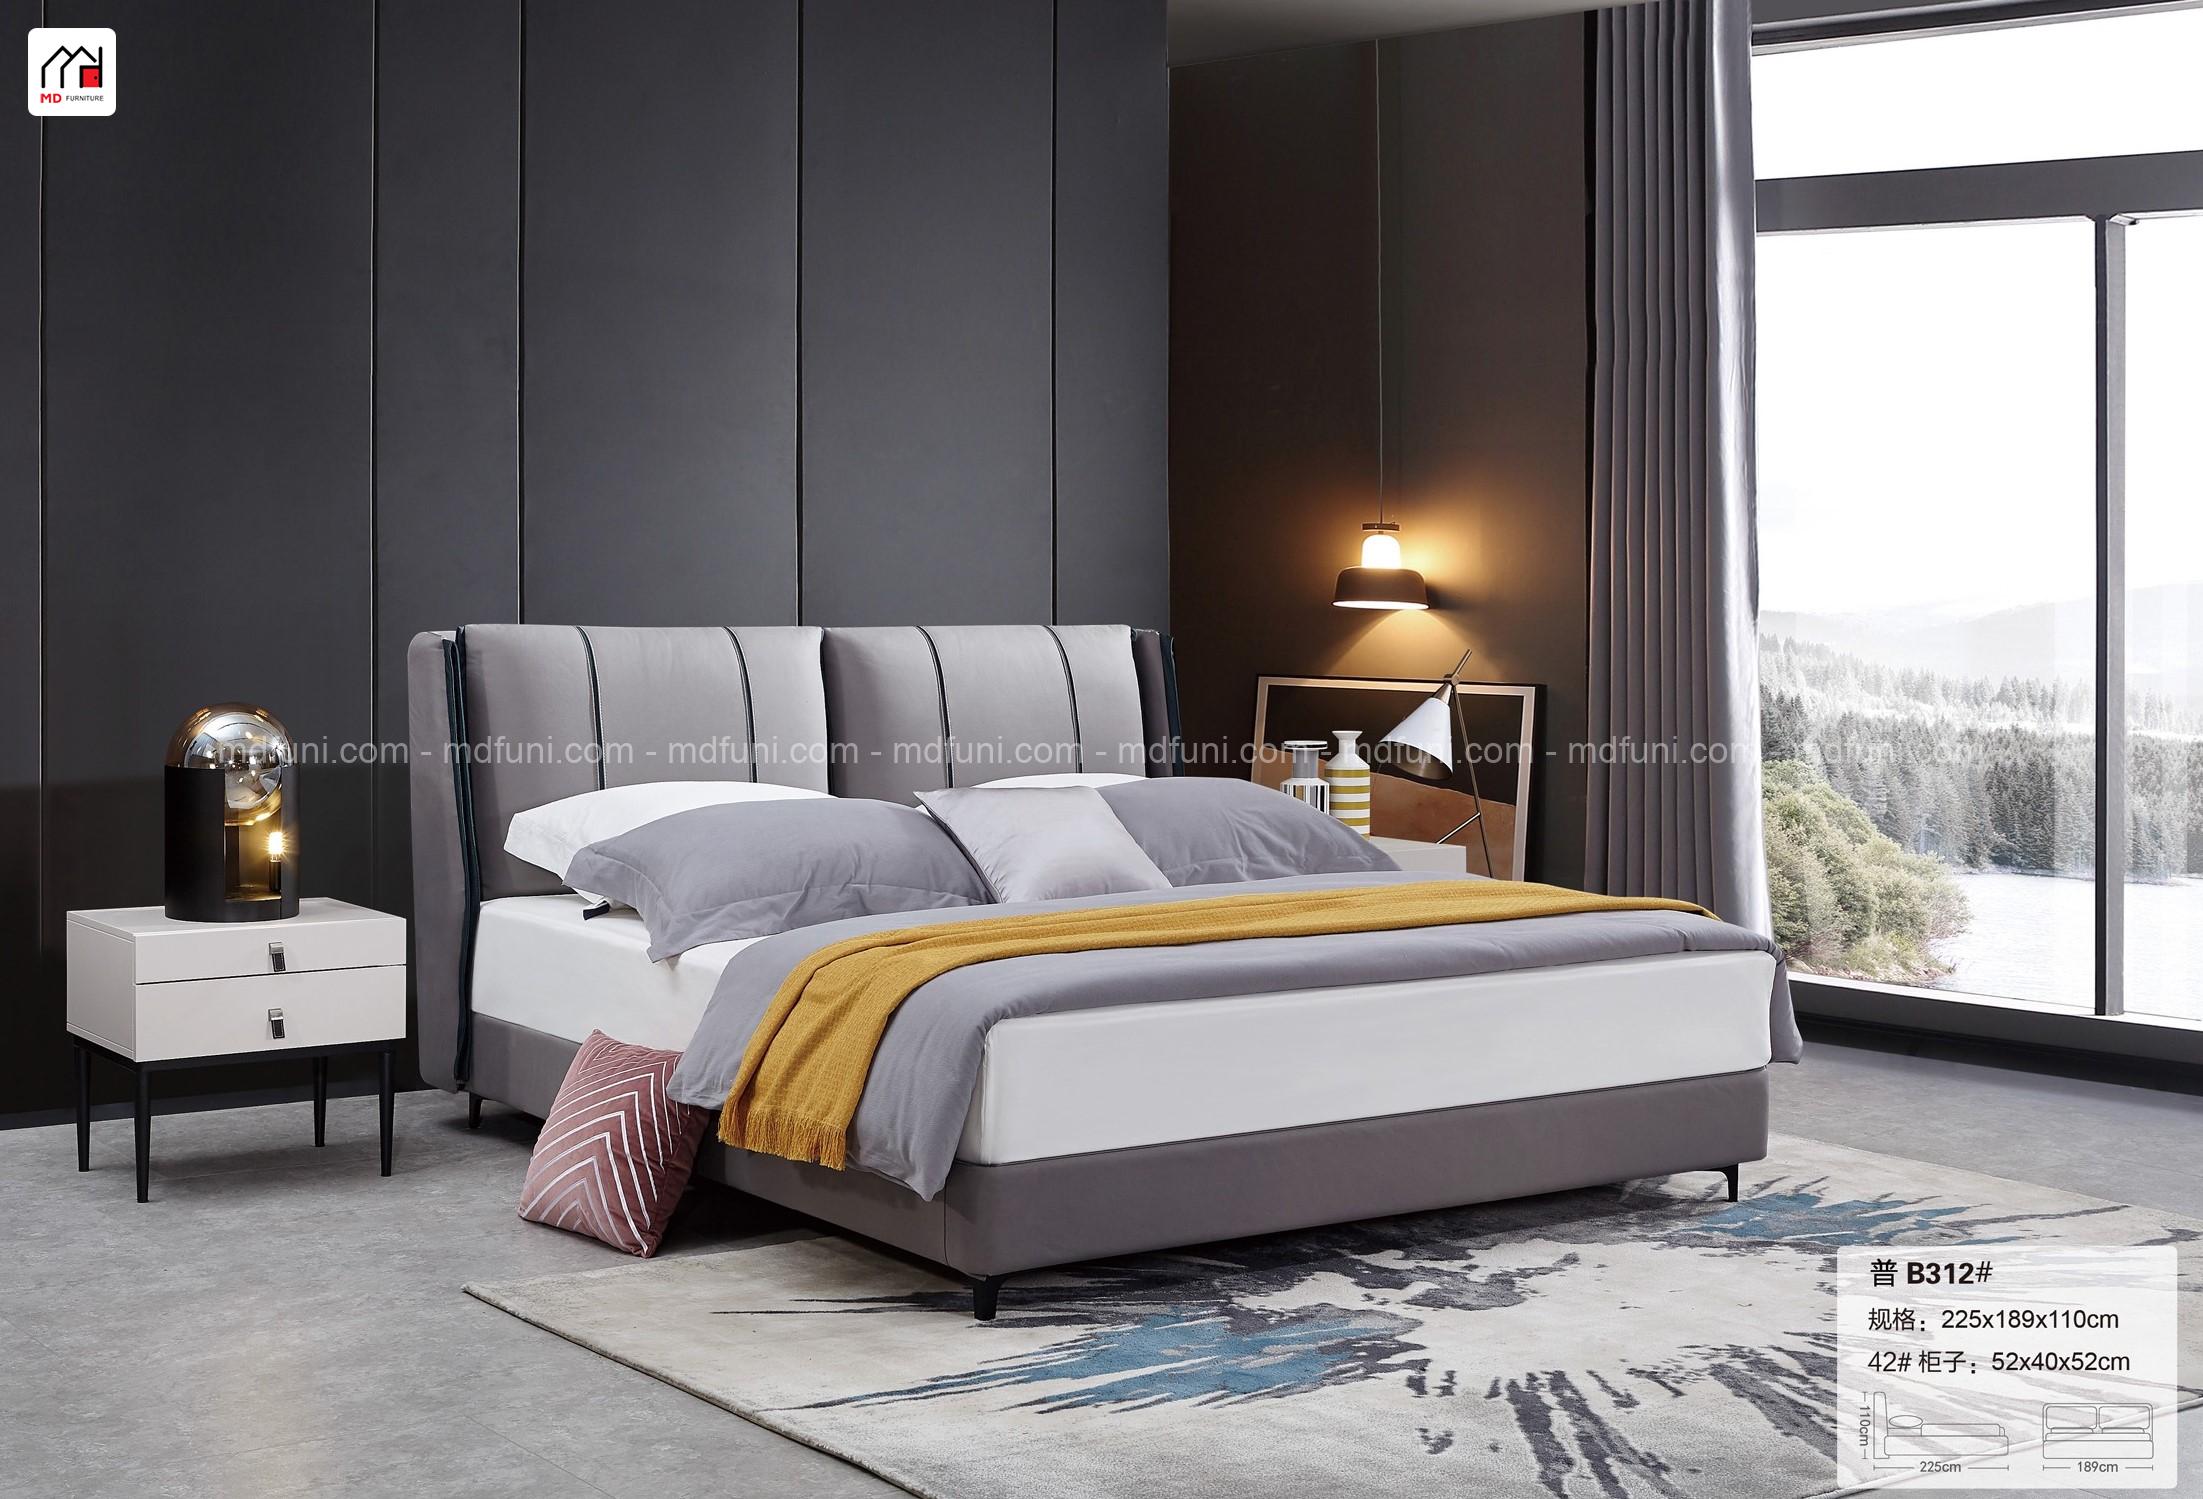 Top 50 mẫu giường ngủ hiện đại nhập khẩu đẹp và rẻ nhất